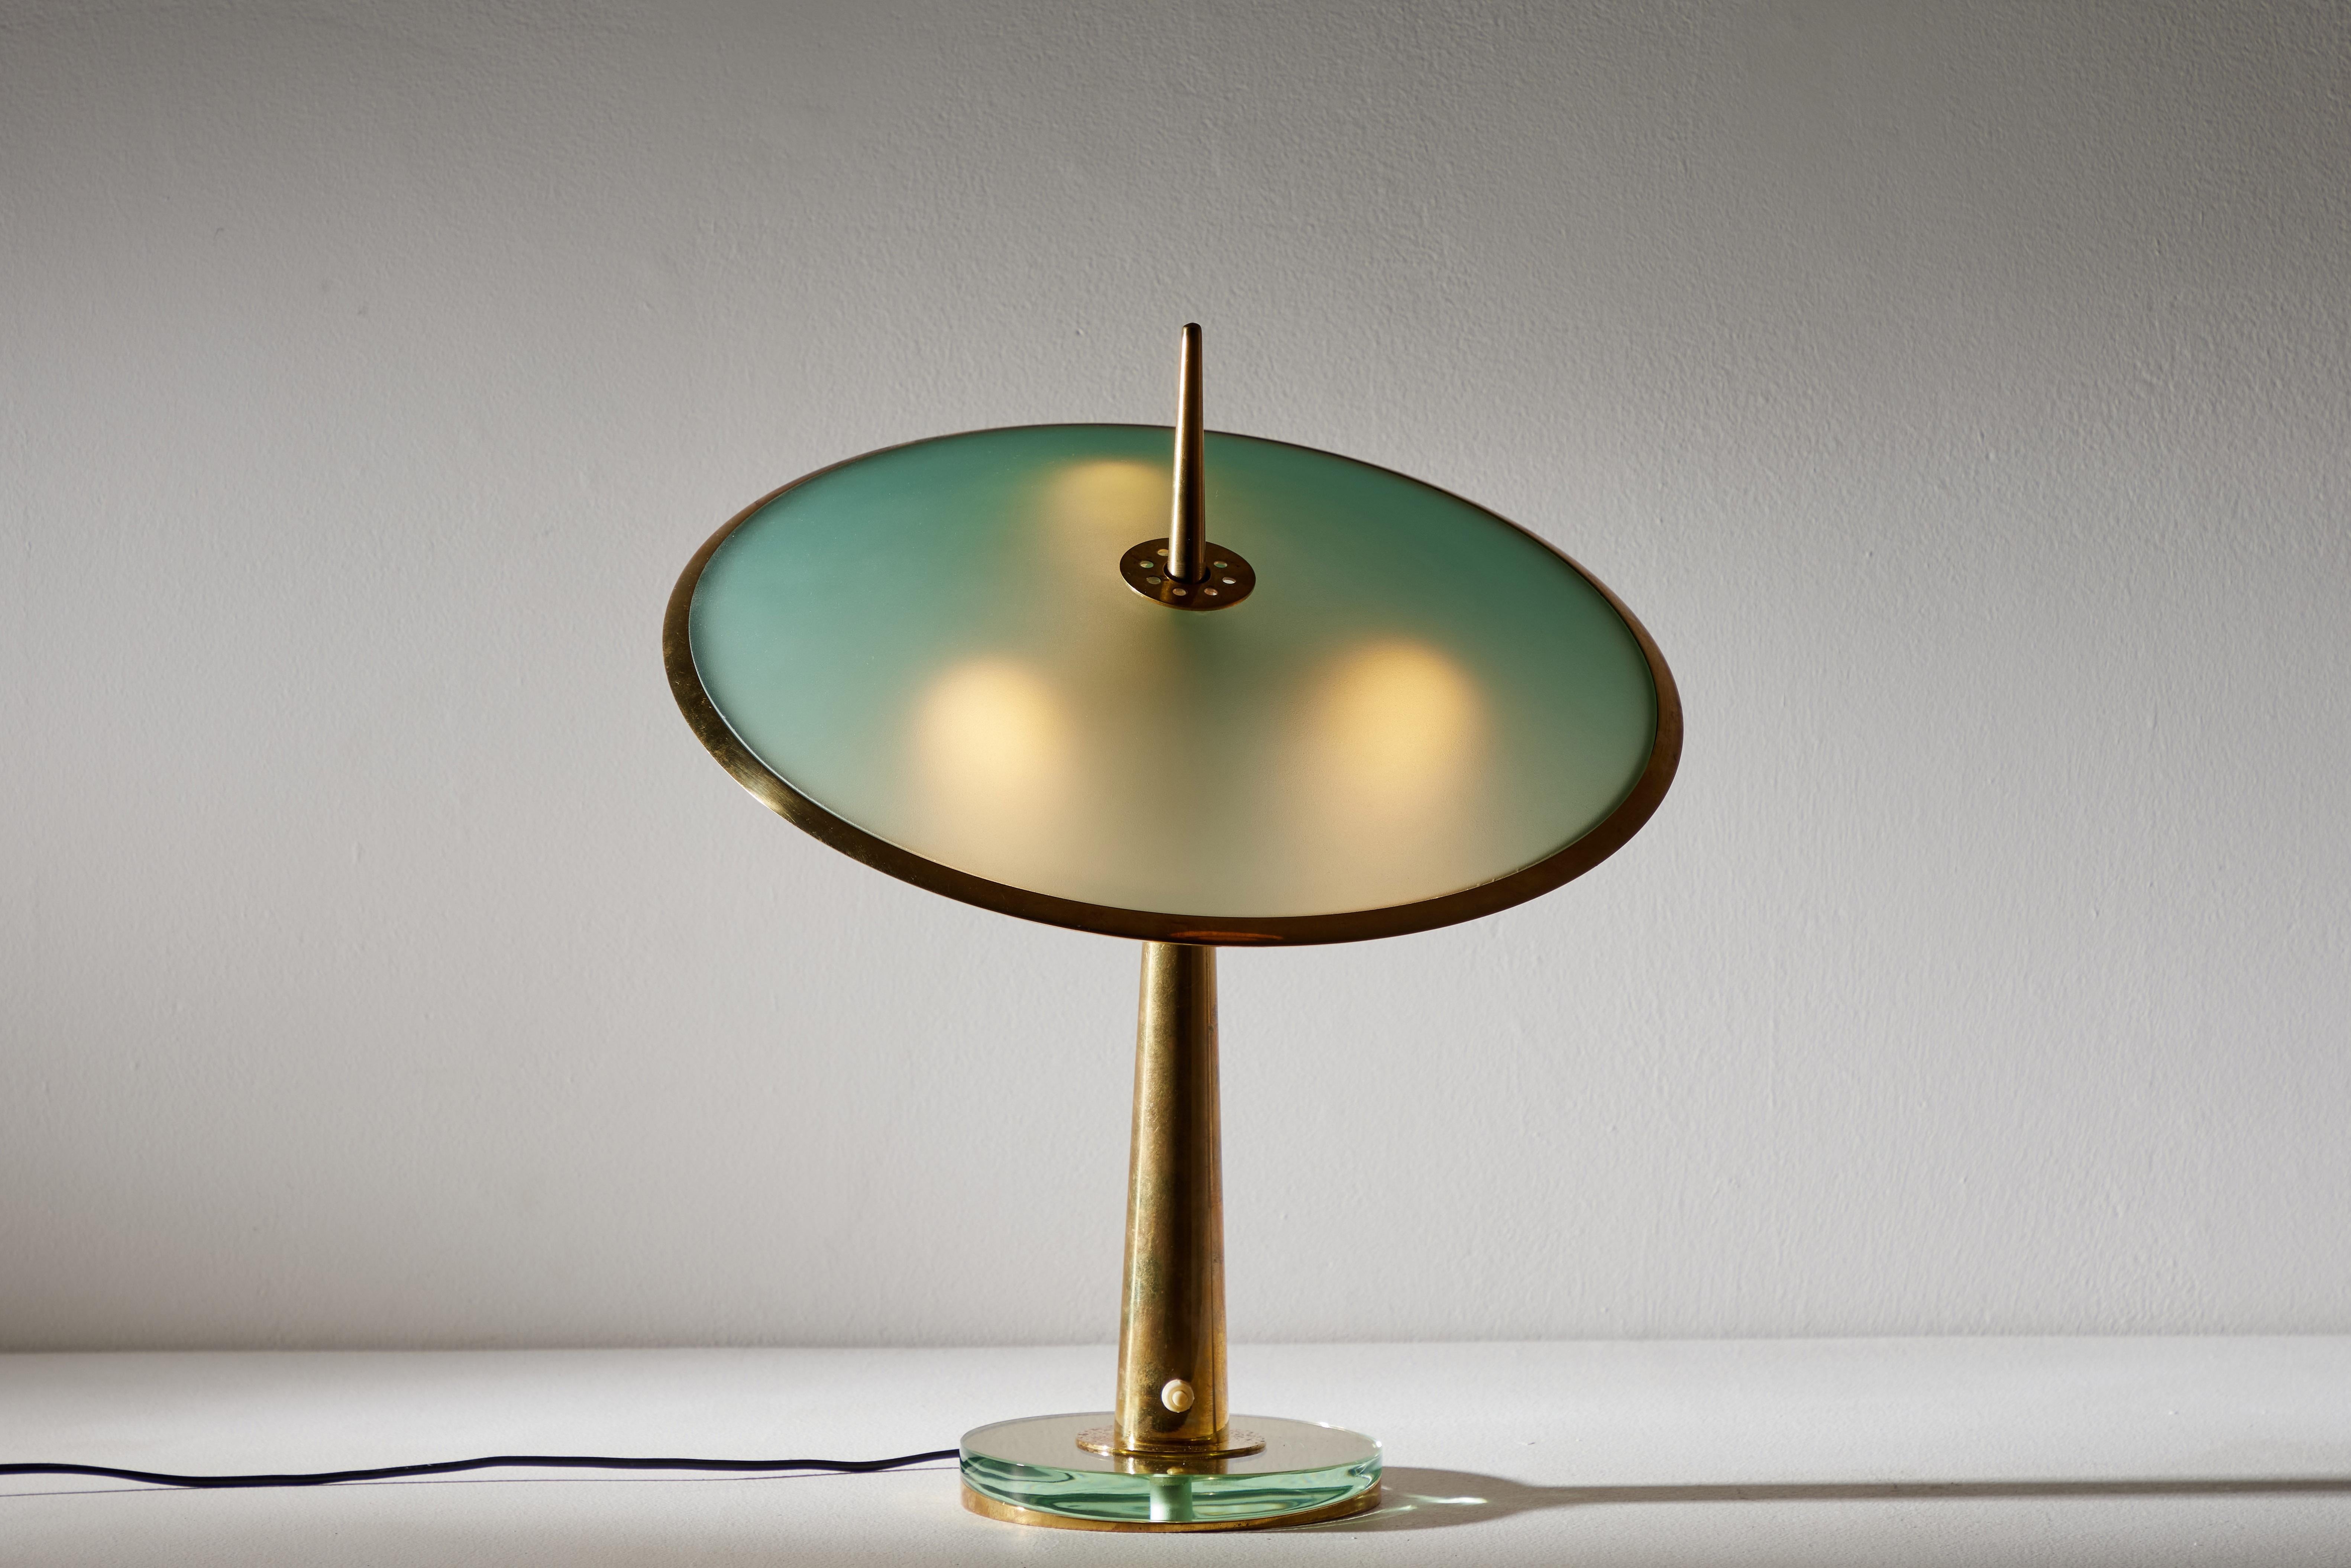 Modell Nr. 1538 Tischleuchte von Max Ingrand für Fontana Arte. Entworfen und hergestellt in Italien, ca. 1950er Jahre. Glas, Messing. Original europäische Kordel. Wir empfehlen drei E12-Kandelaber-Glühbirnen. Die Glühbirnen werden als einmalige